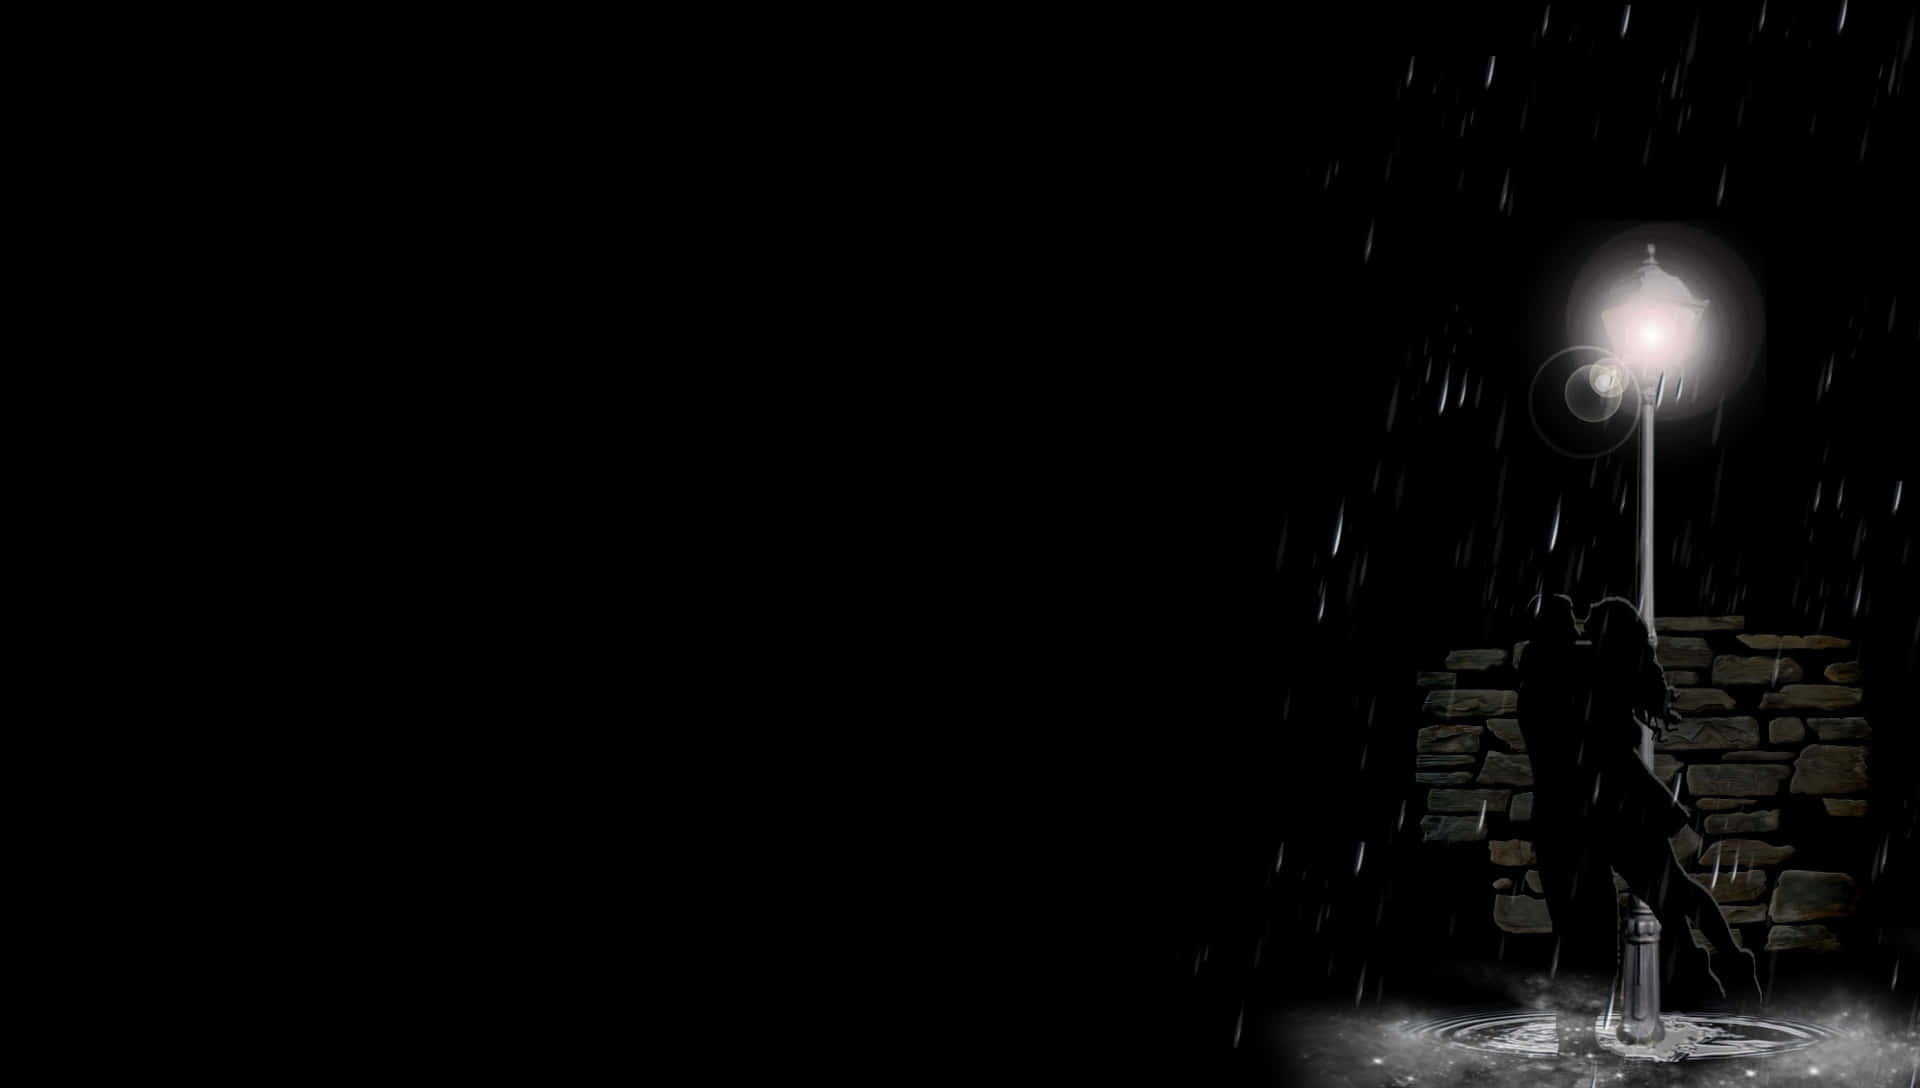 Enkvinna Står Under En Gatulampa I Regnet.